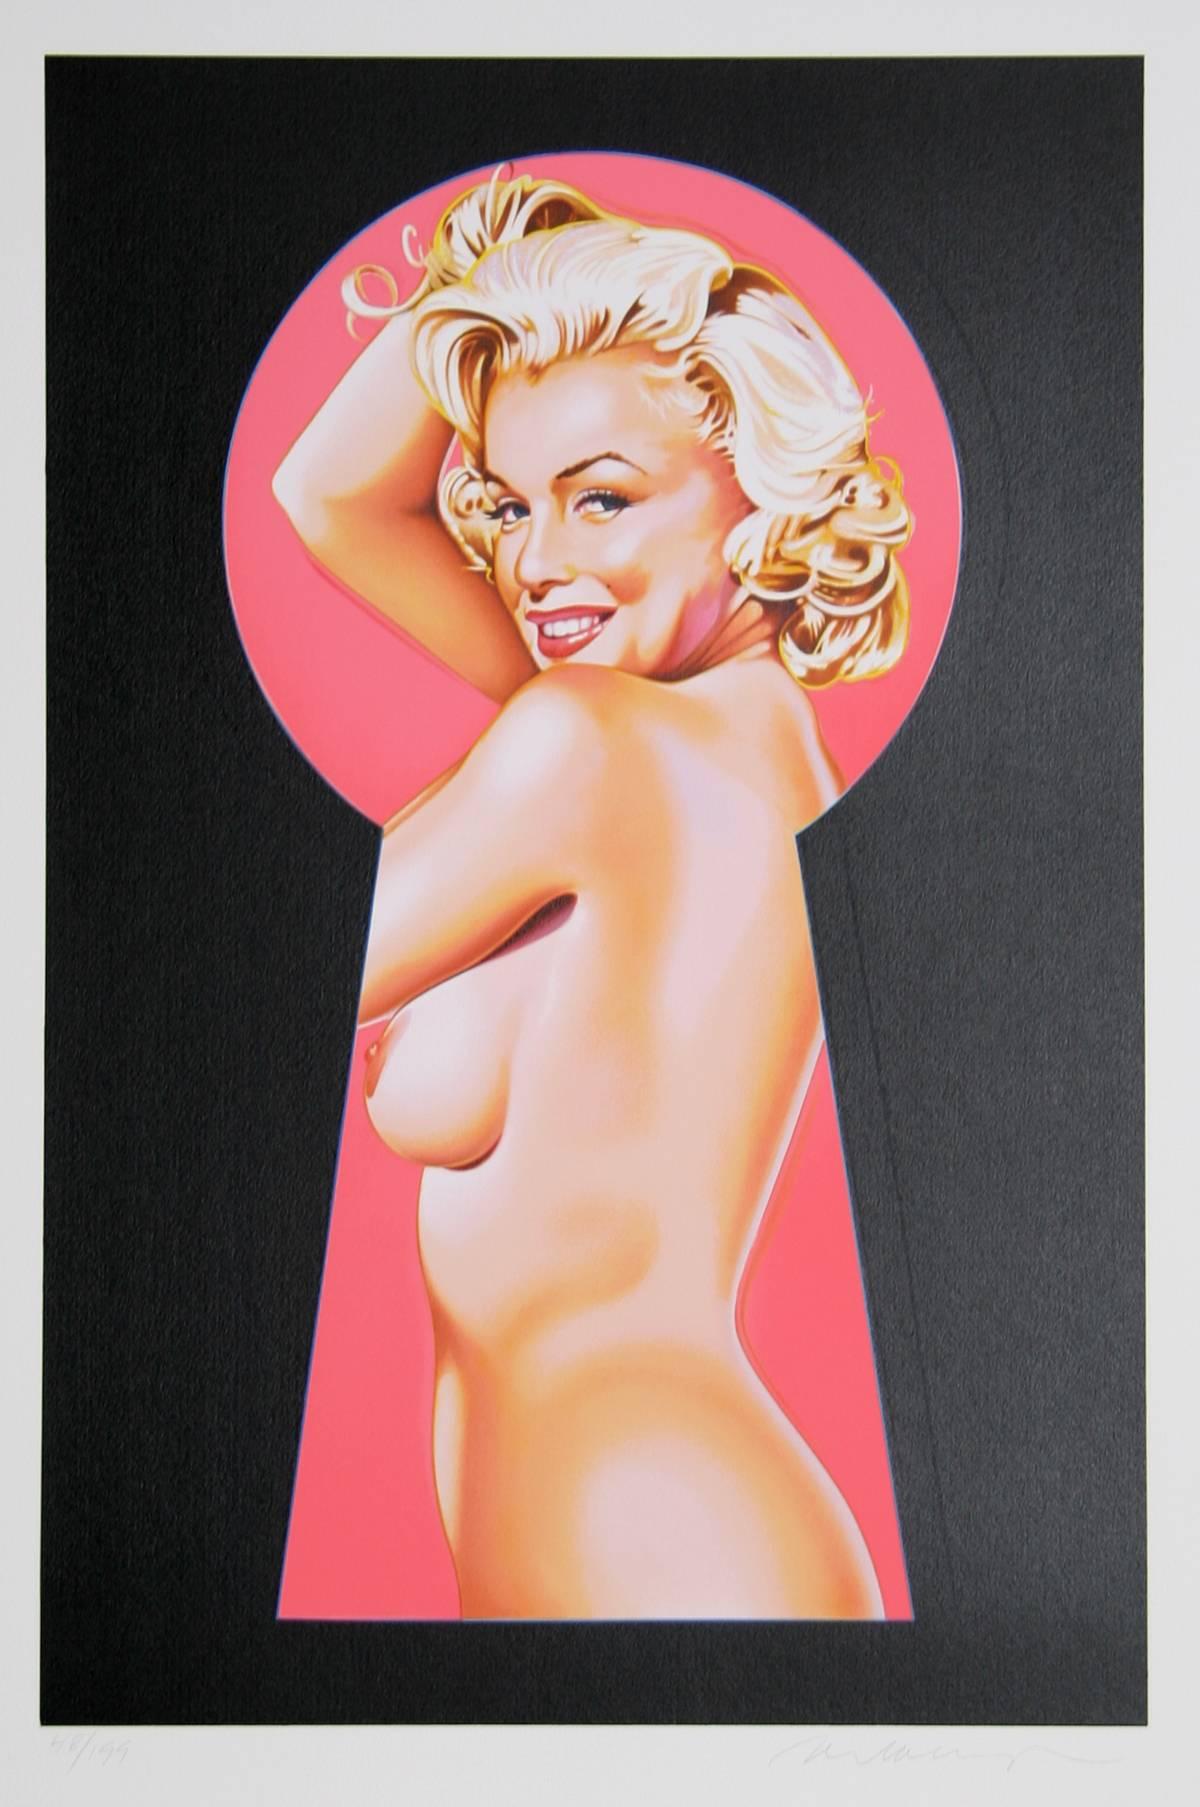 Artiste : Mel Ramos (américain, né en 1935)
Titre : Peek-a-Boo Marilyn 1
Année : 2002
Médium : Lithographie, signée et numérotée au crayon
Edition : 199
Taille : 31.5 in. x 23 in. (80,01 cm x 58,42 cm)